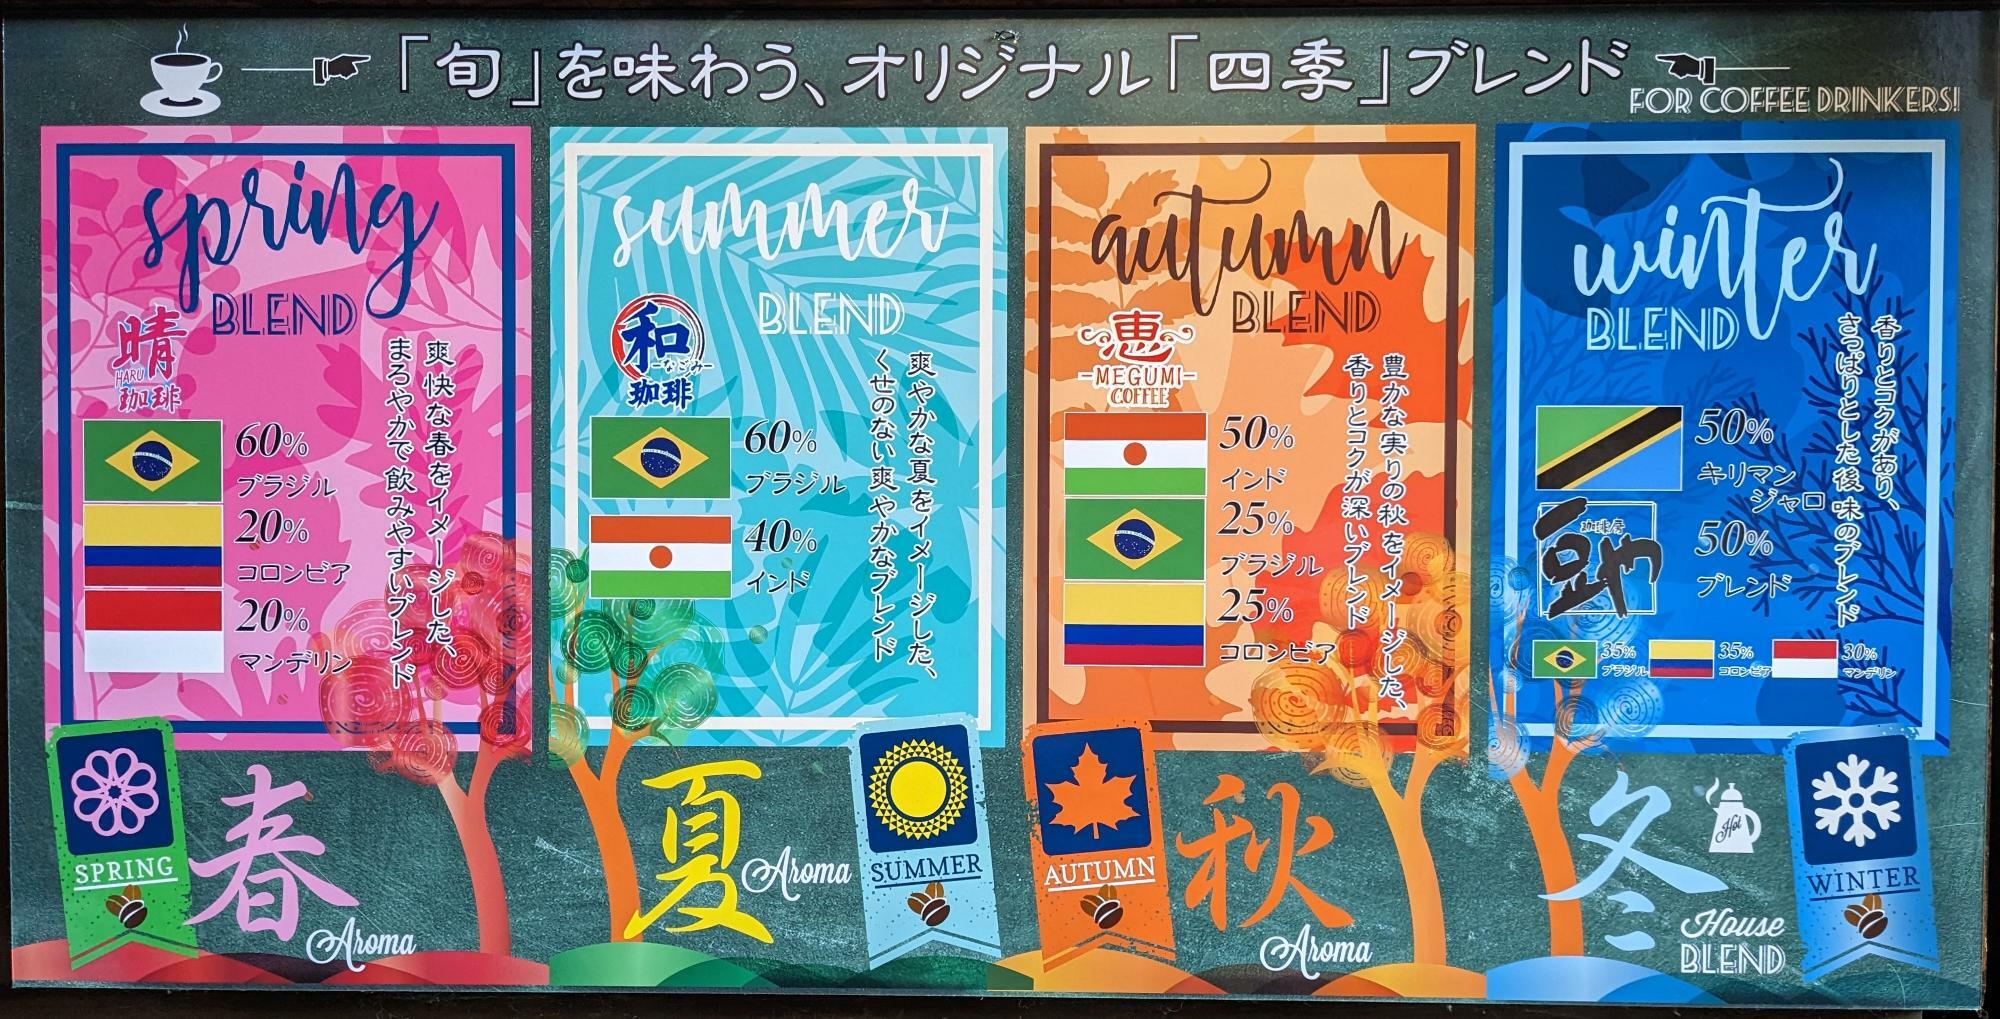 オリジナル「四季」ブレンド ポスター